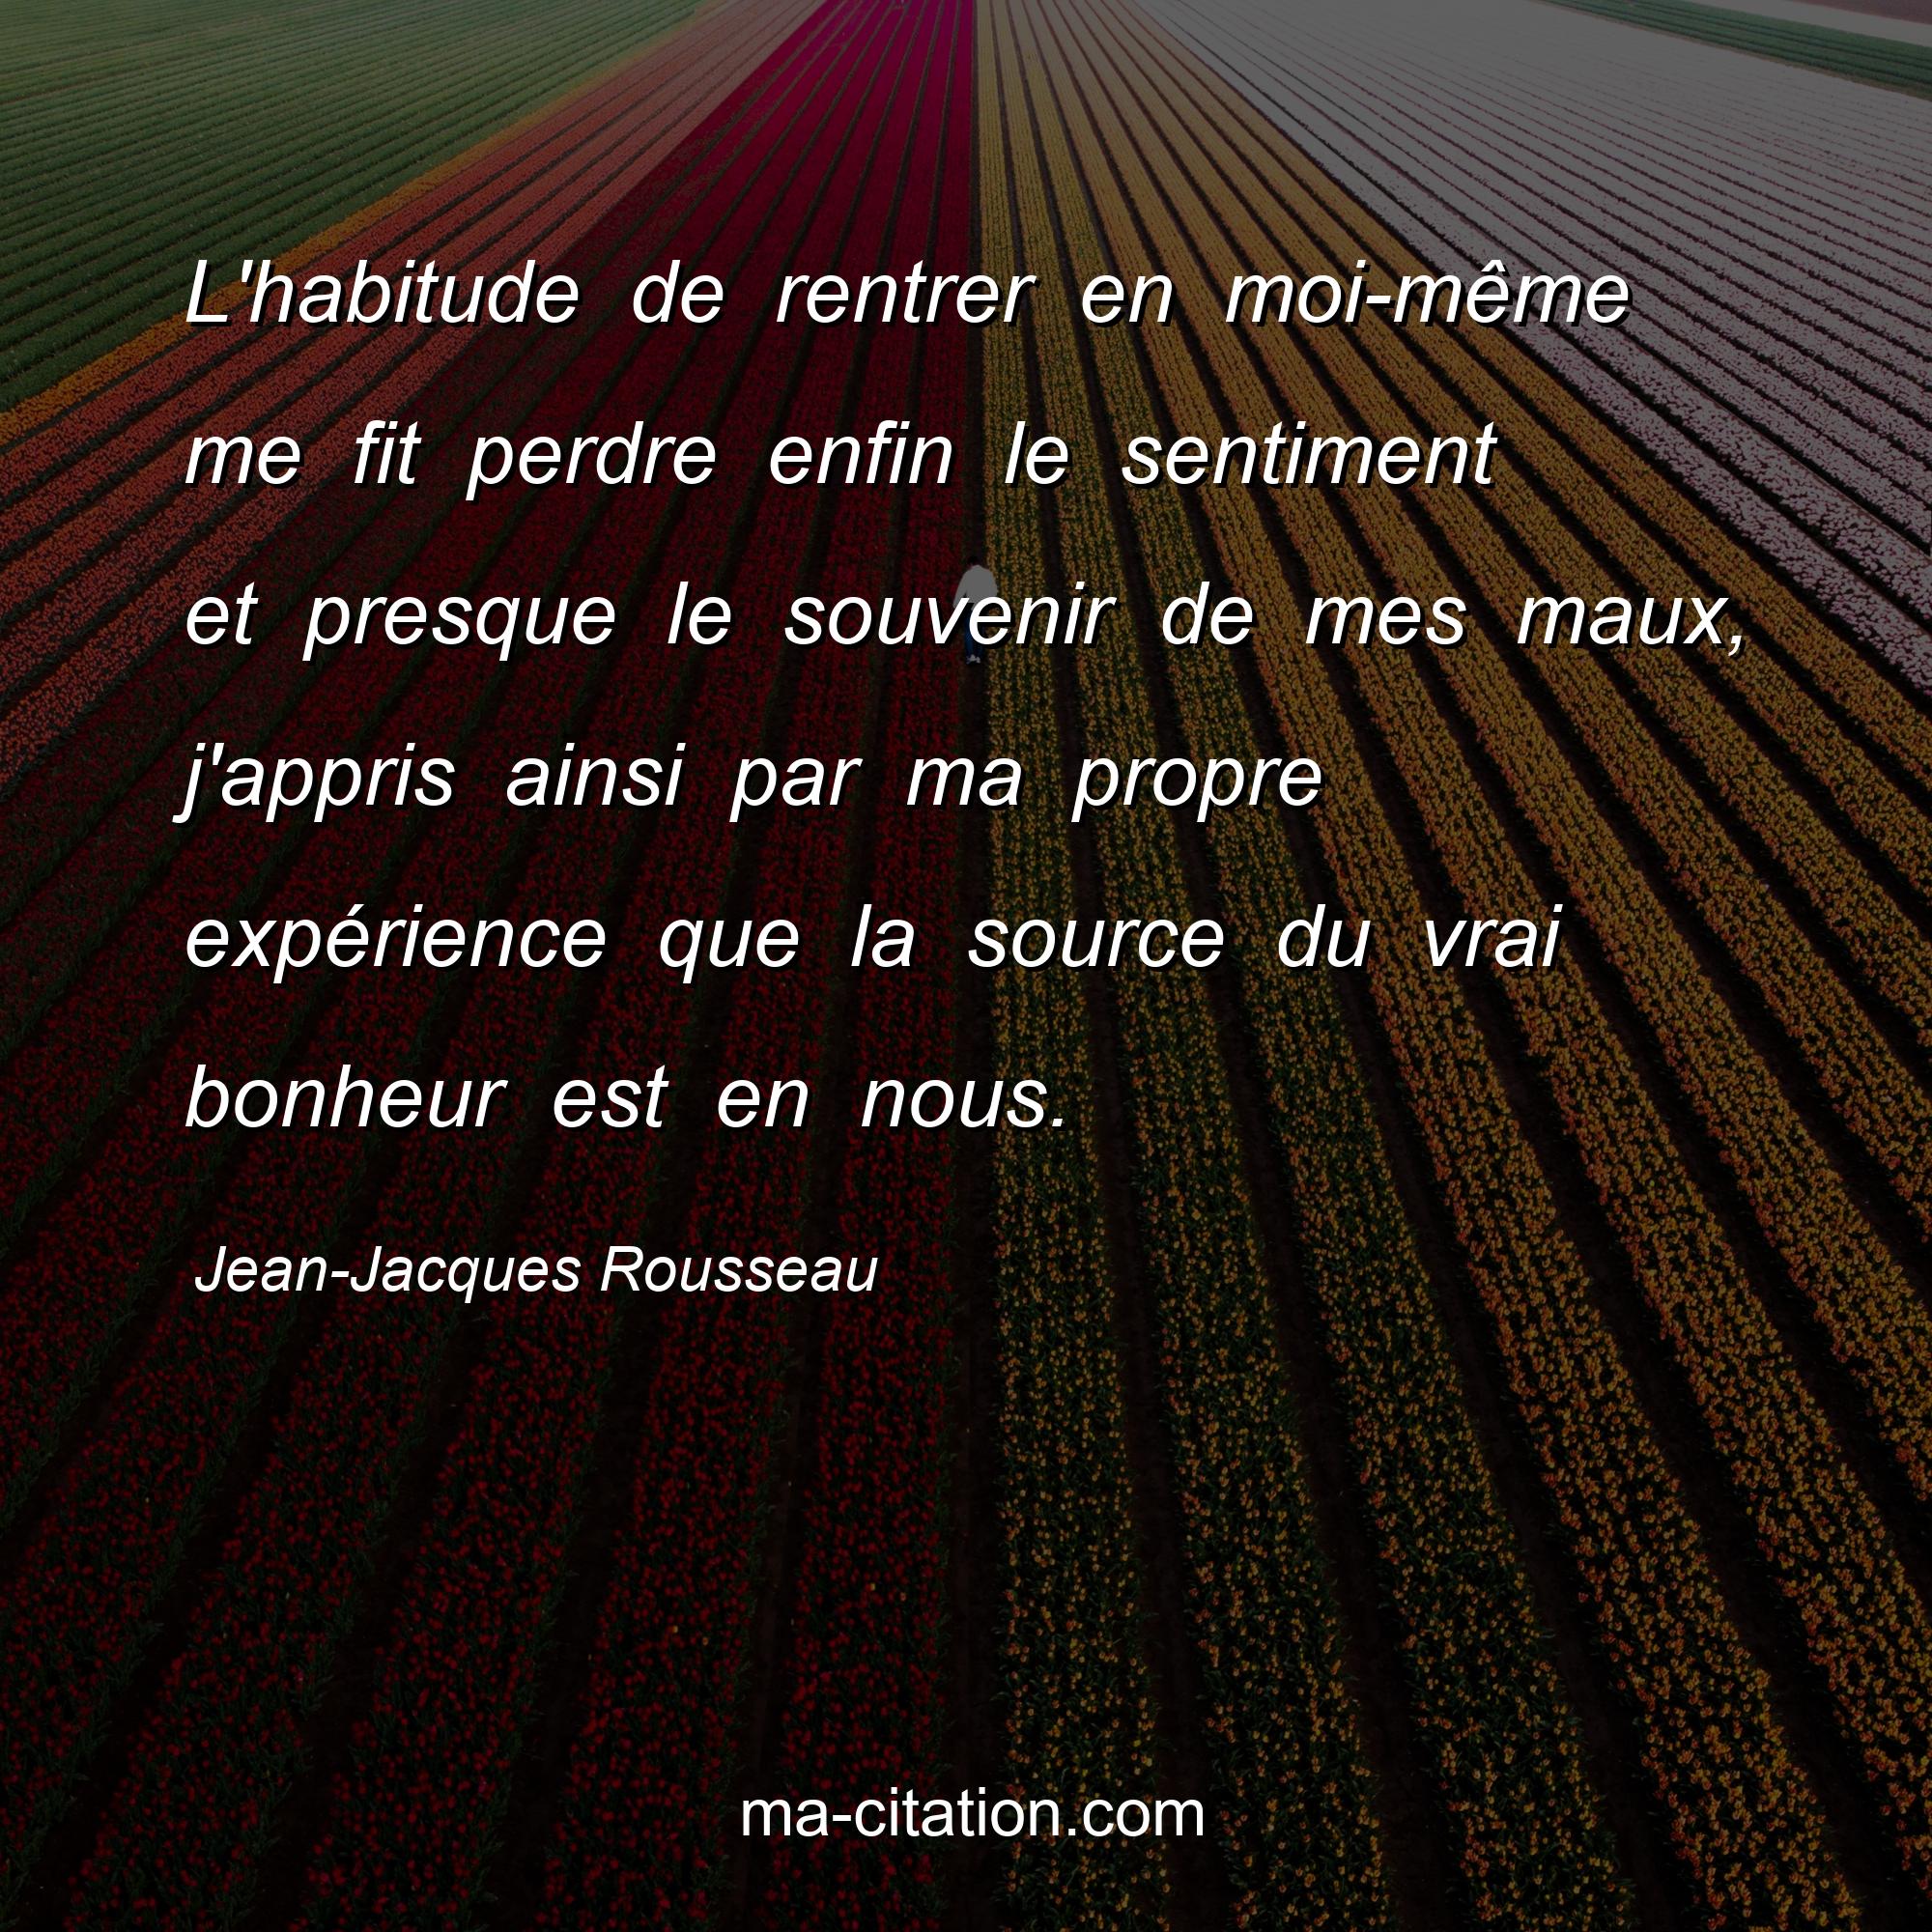 Jean-Jacques Rousseau : L'habitude de rentrer en moi-même me fit perdre enfin le sentiment et presque le souvenir de mes maux, j'appris ainsi par ma propre expérience que la source du vrai bonheur est en nous.